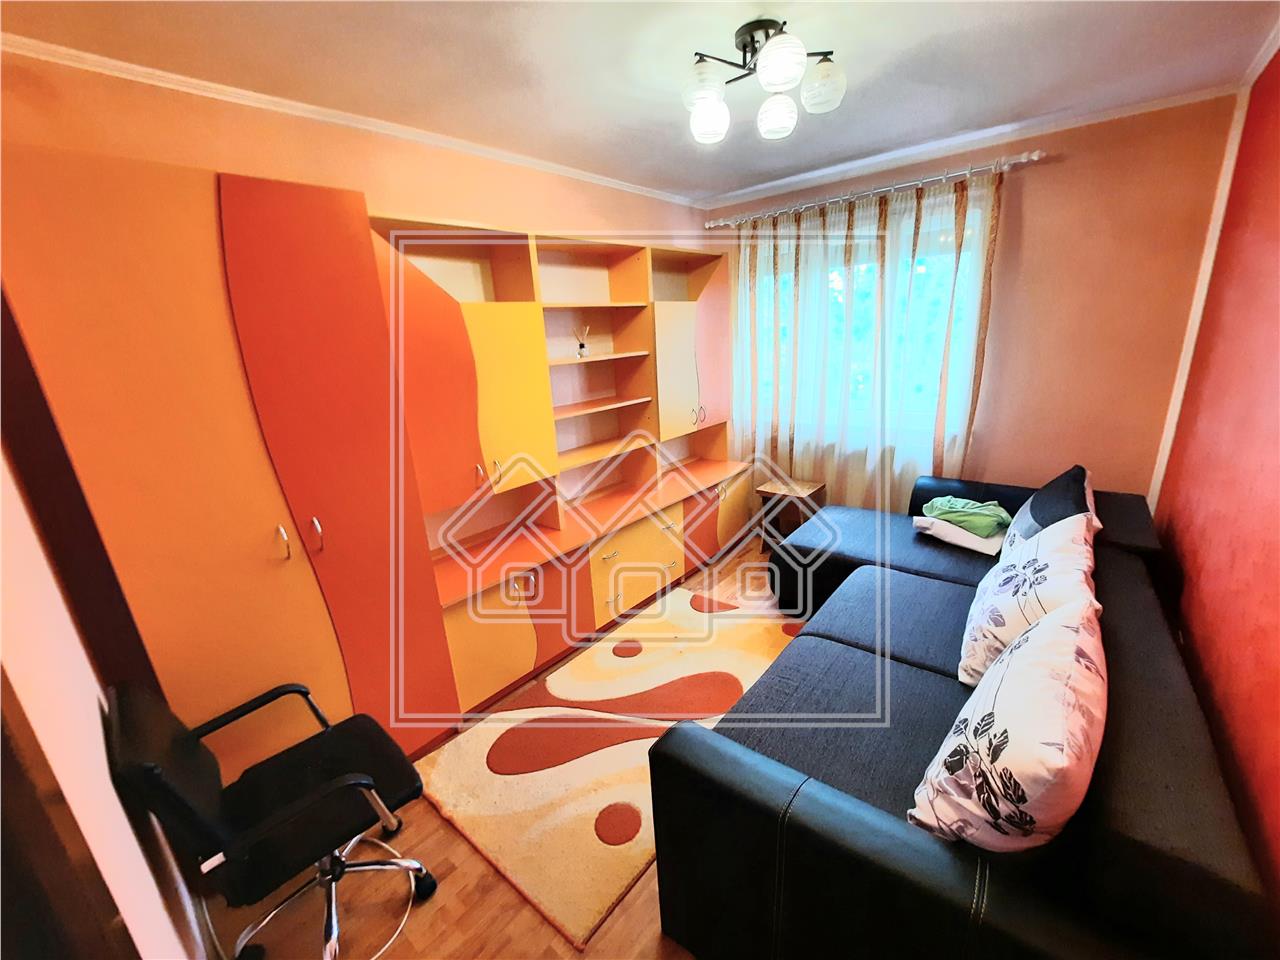 Apartment for rent in Alba Iulia - 2 rooms - Cetate area